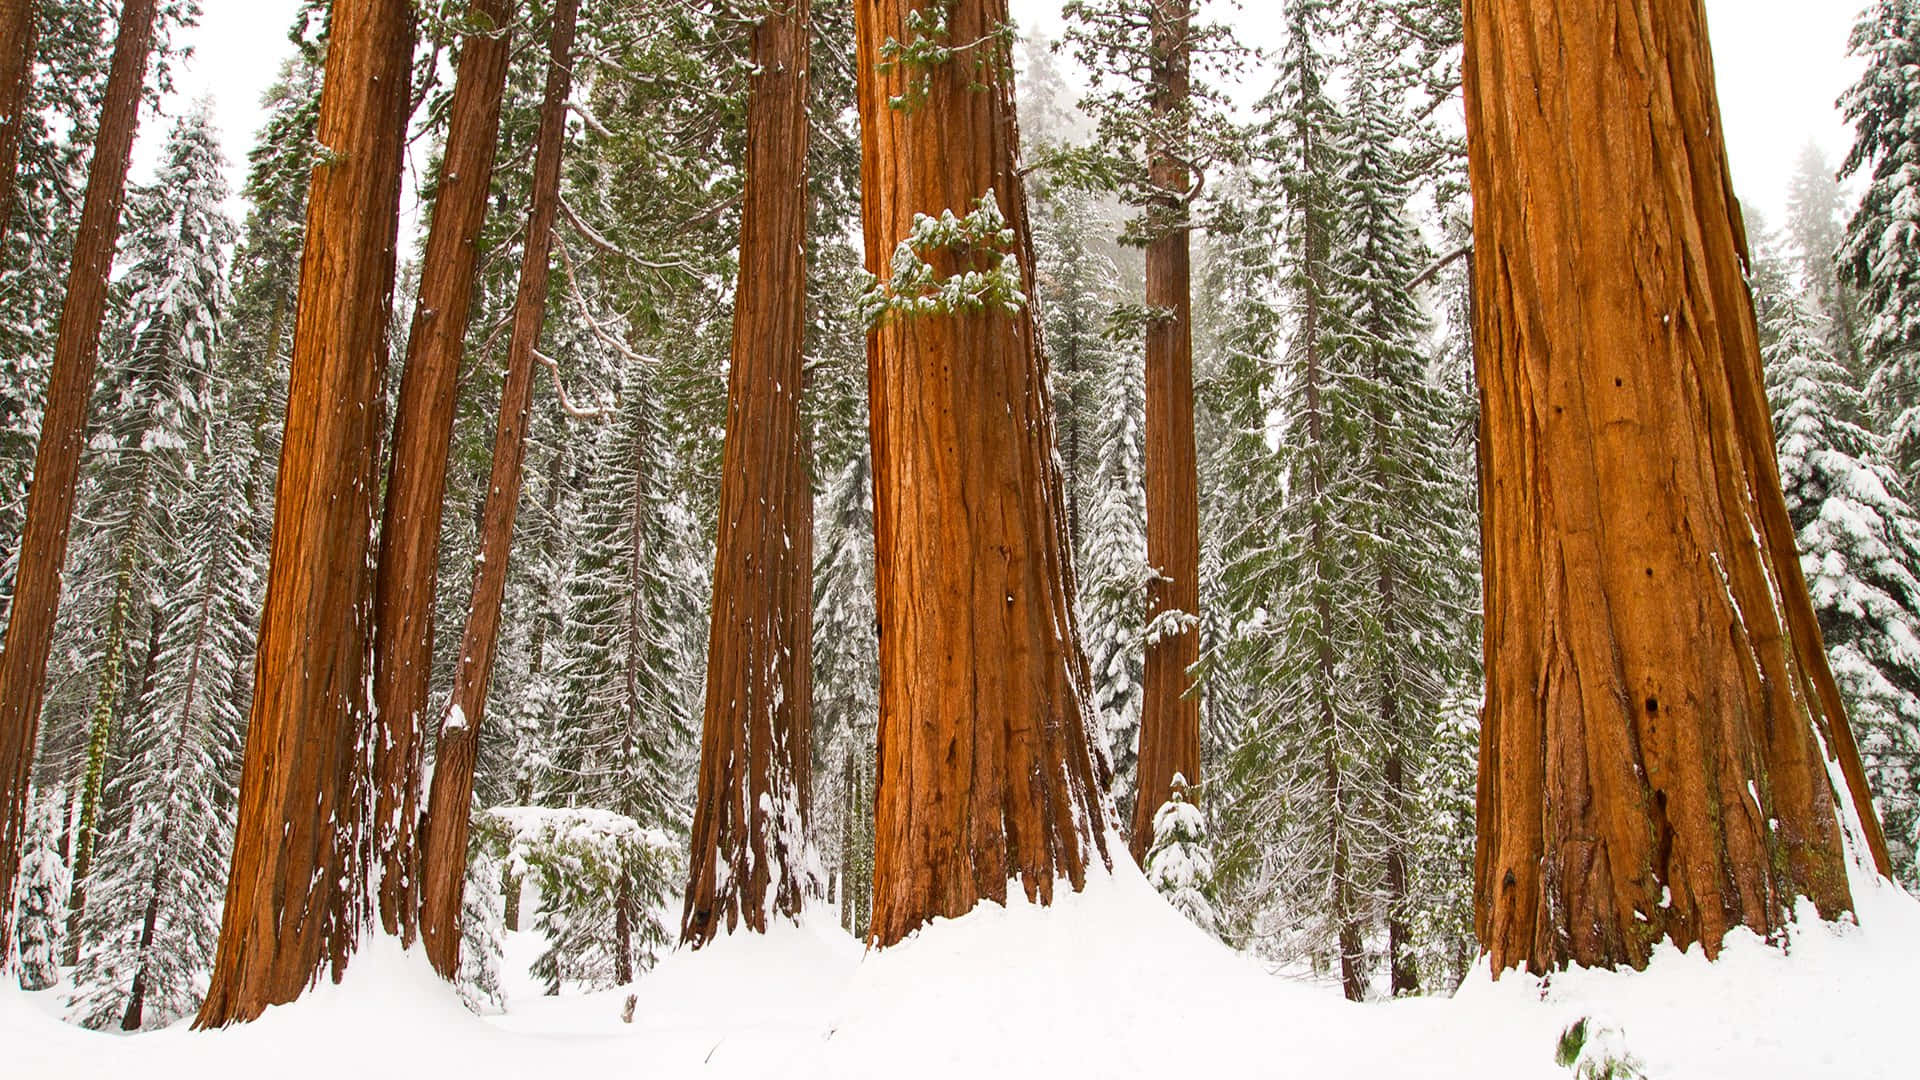 Antichialberi Di Sequoia Si Ergono Maestosi In Una Foresta Rigogliosa E Verde.